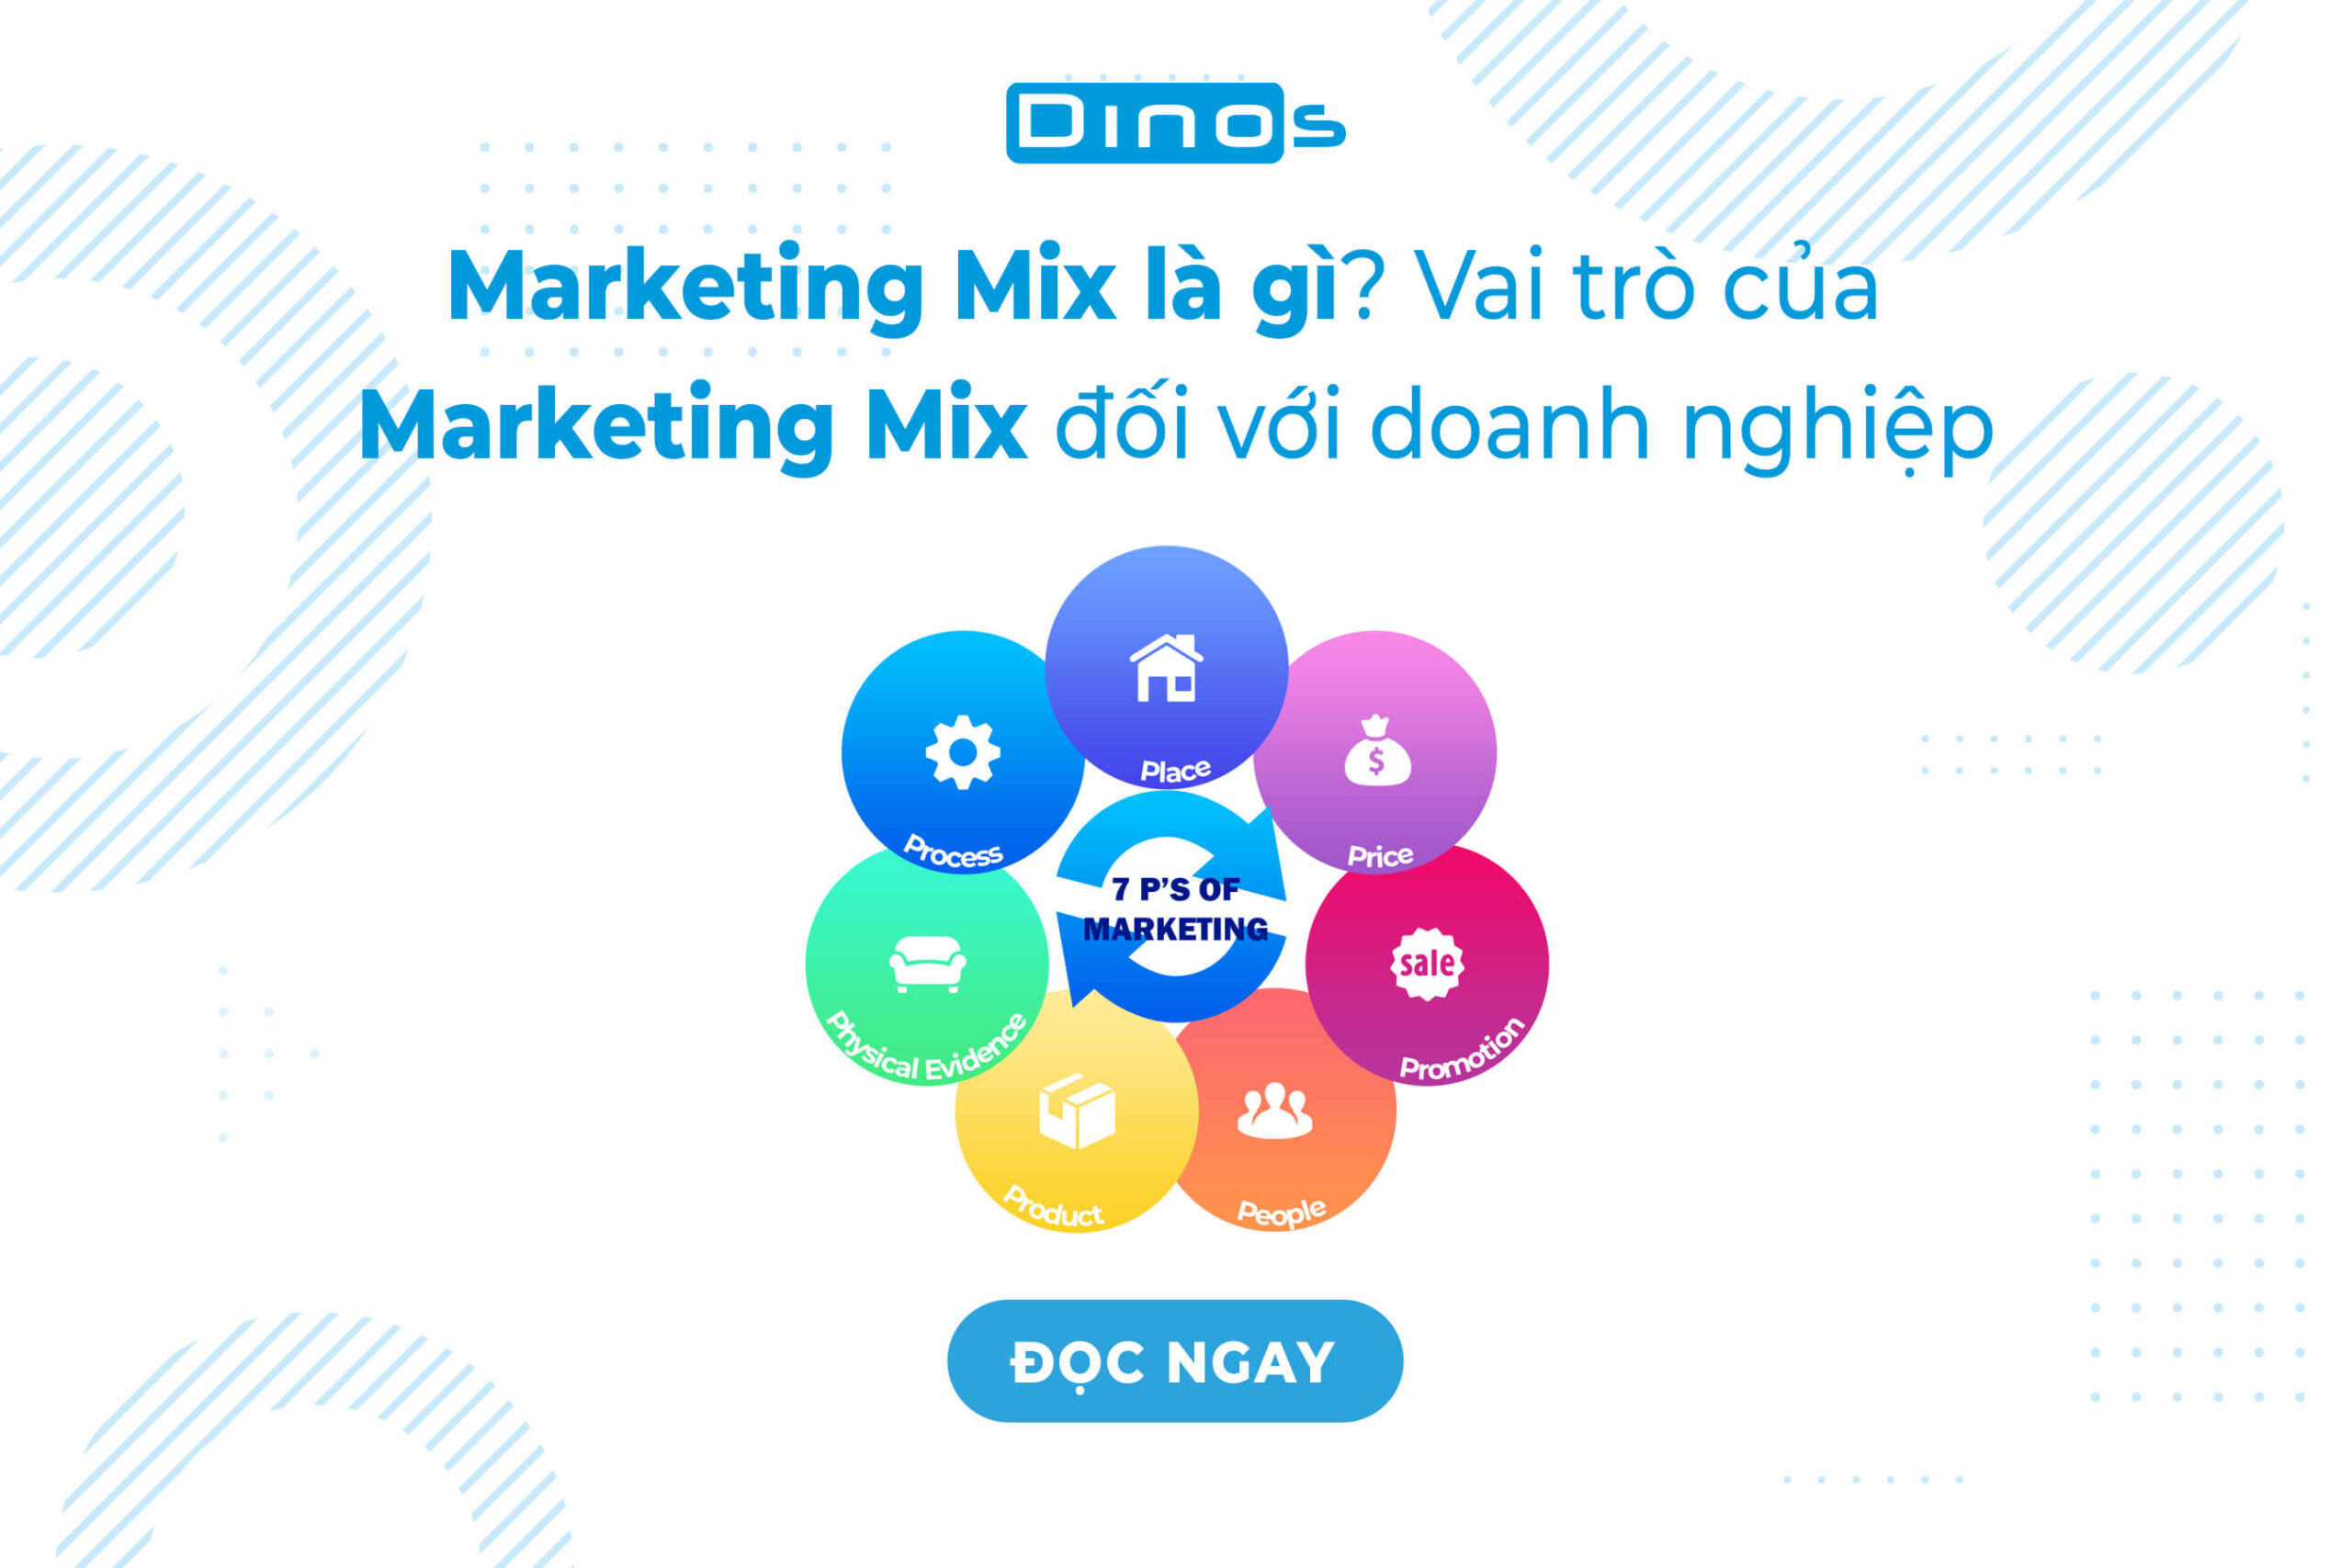 Marketing Mix là gì? Các chiến lược Marketing Mix